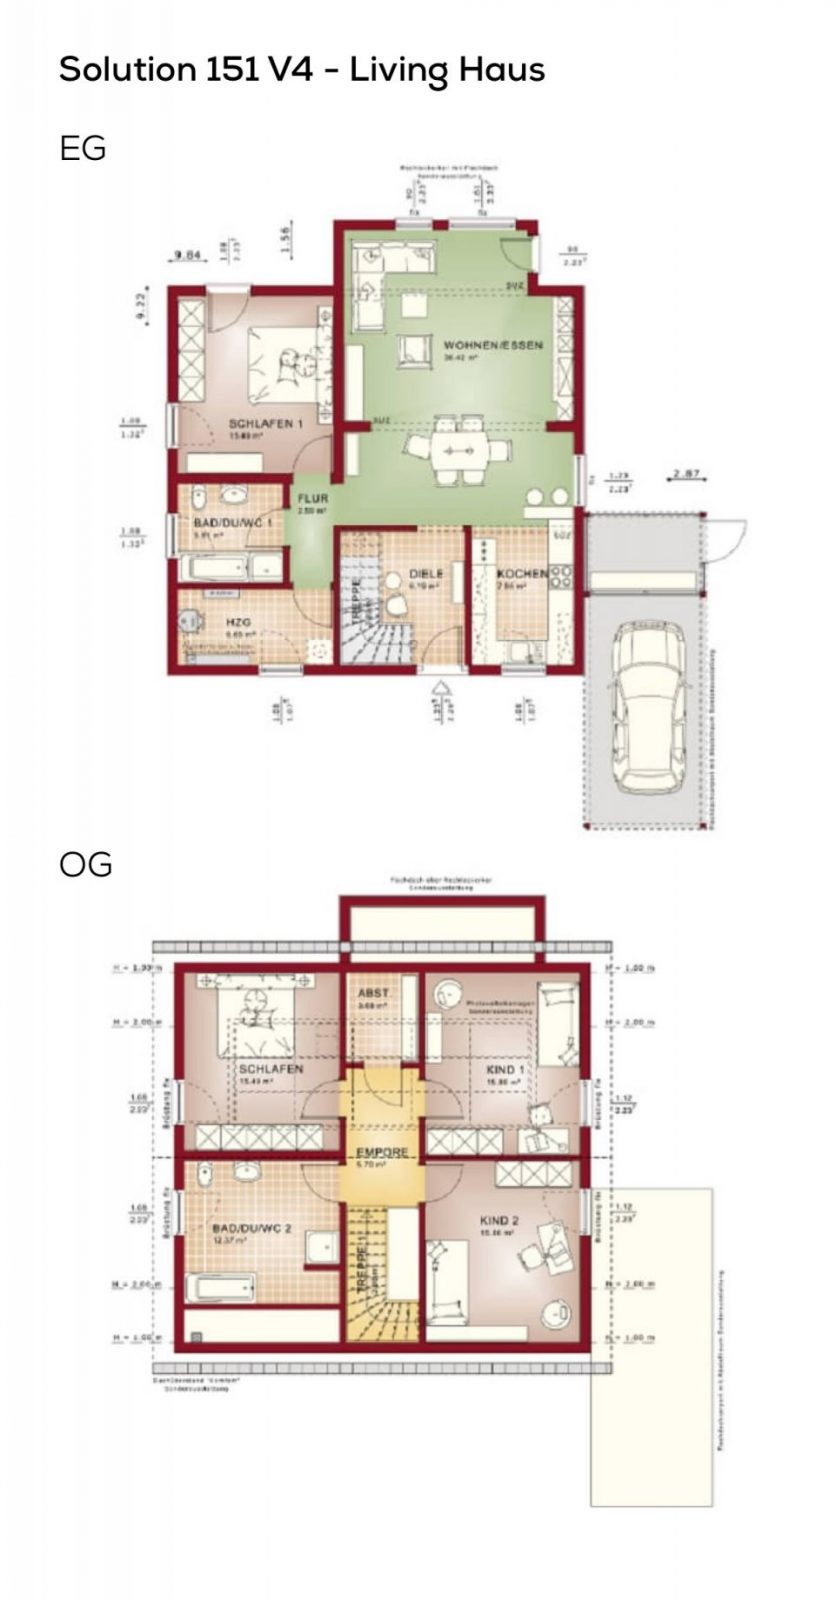 Grundriss Einfamilienhaus Mit Satteldach  5 Zimmer 150 Qm von Grundriss Einfamilienhaus 150 Qm Bild